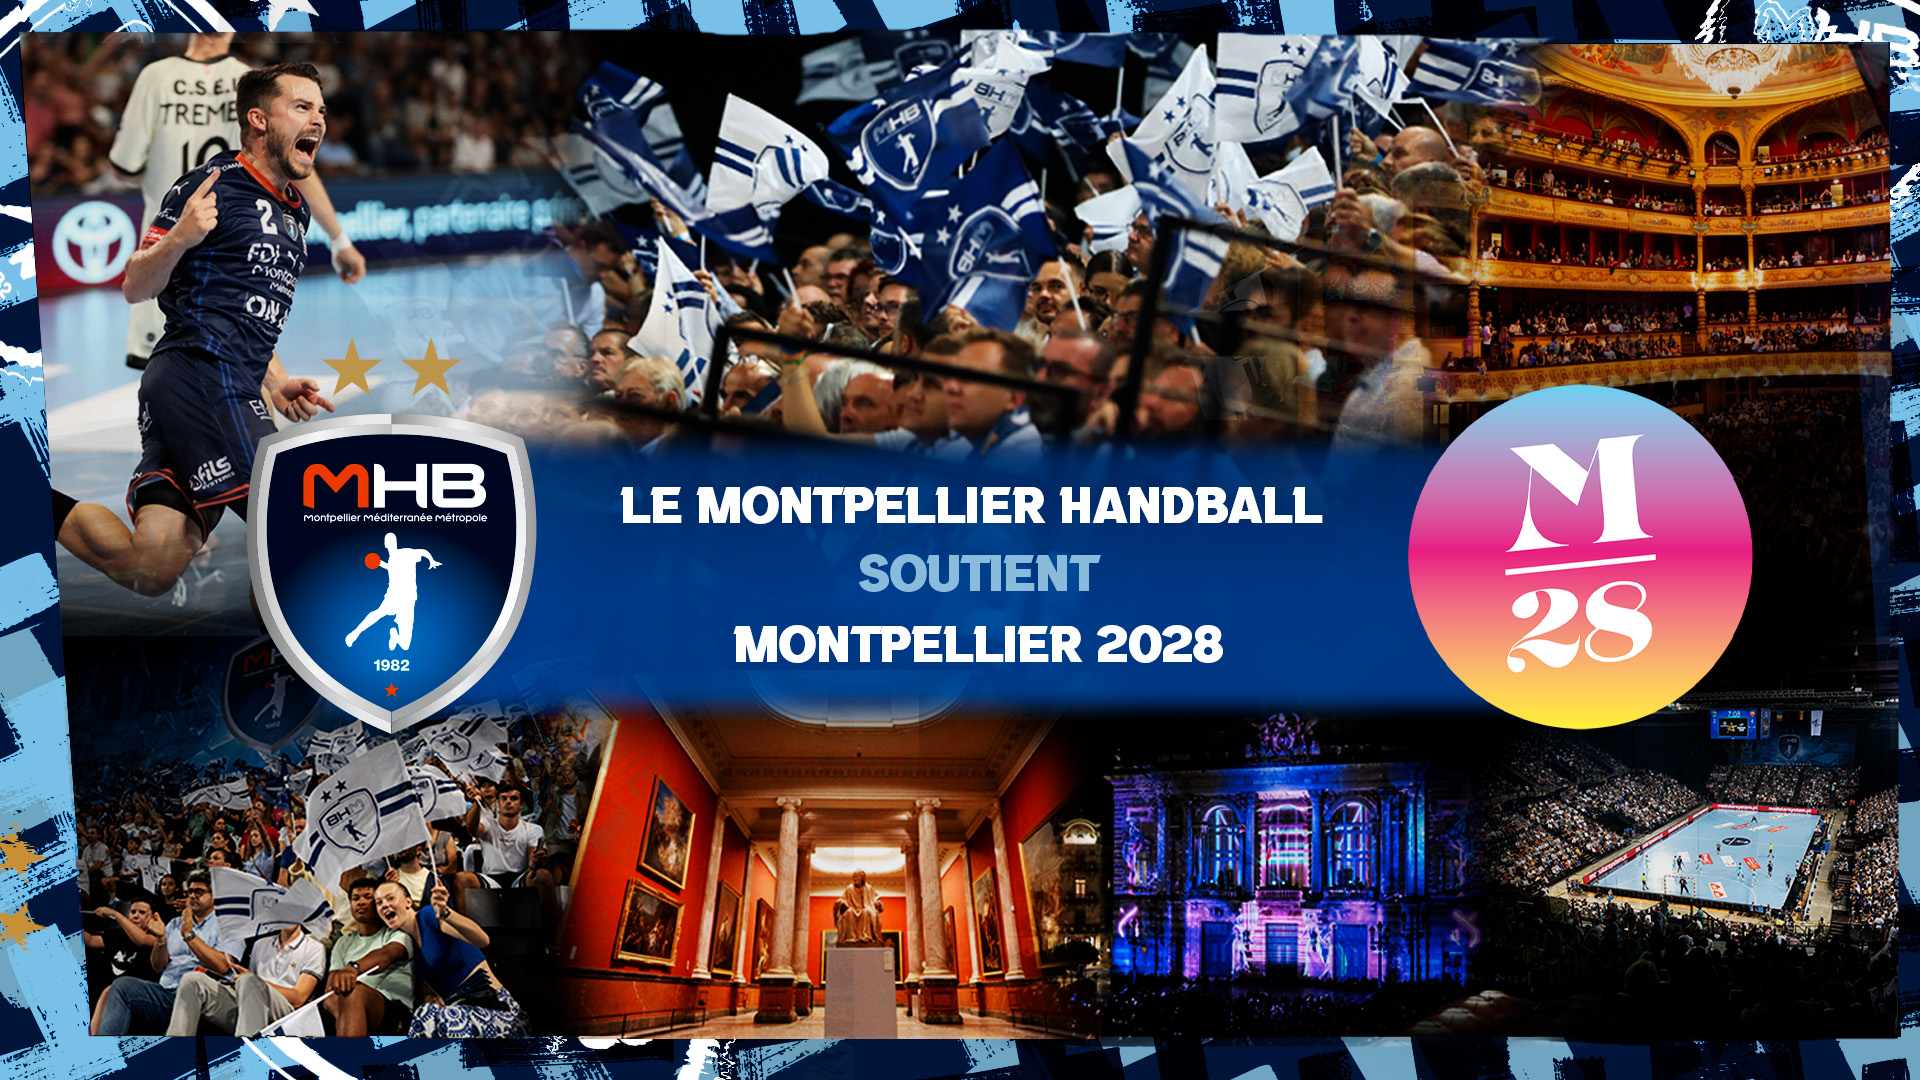 Le MHB soutient Montpellier 2028 !